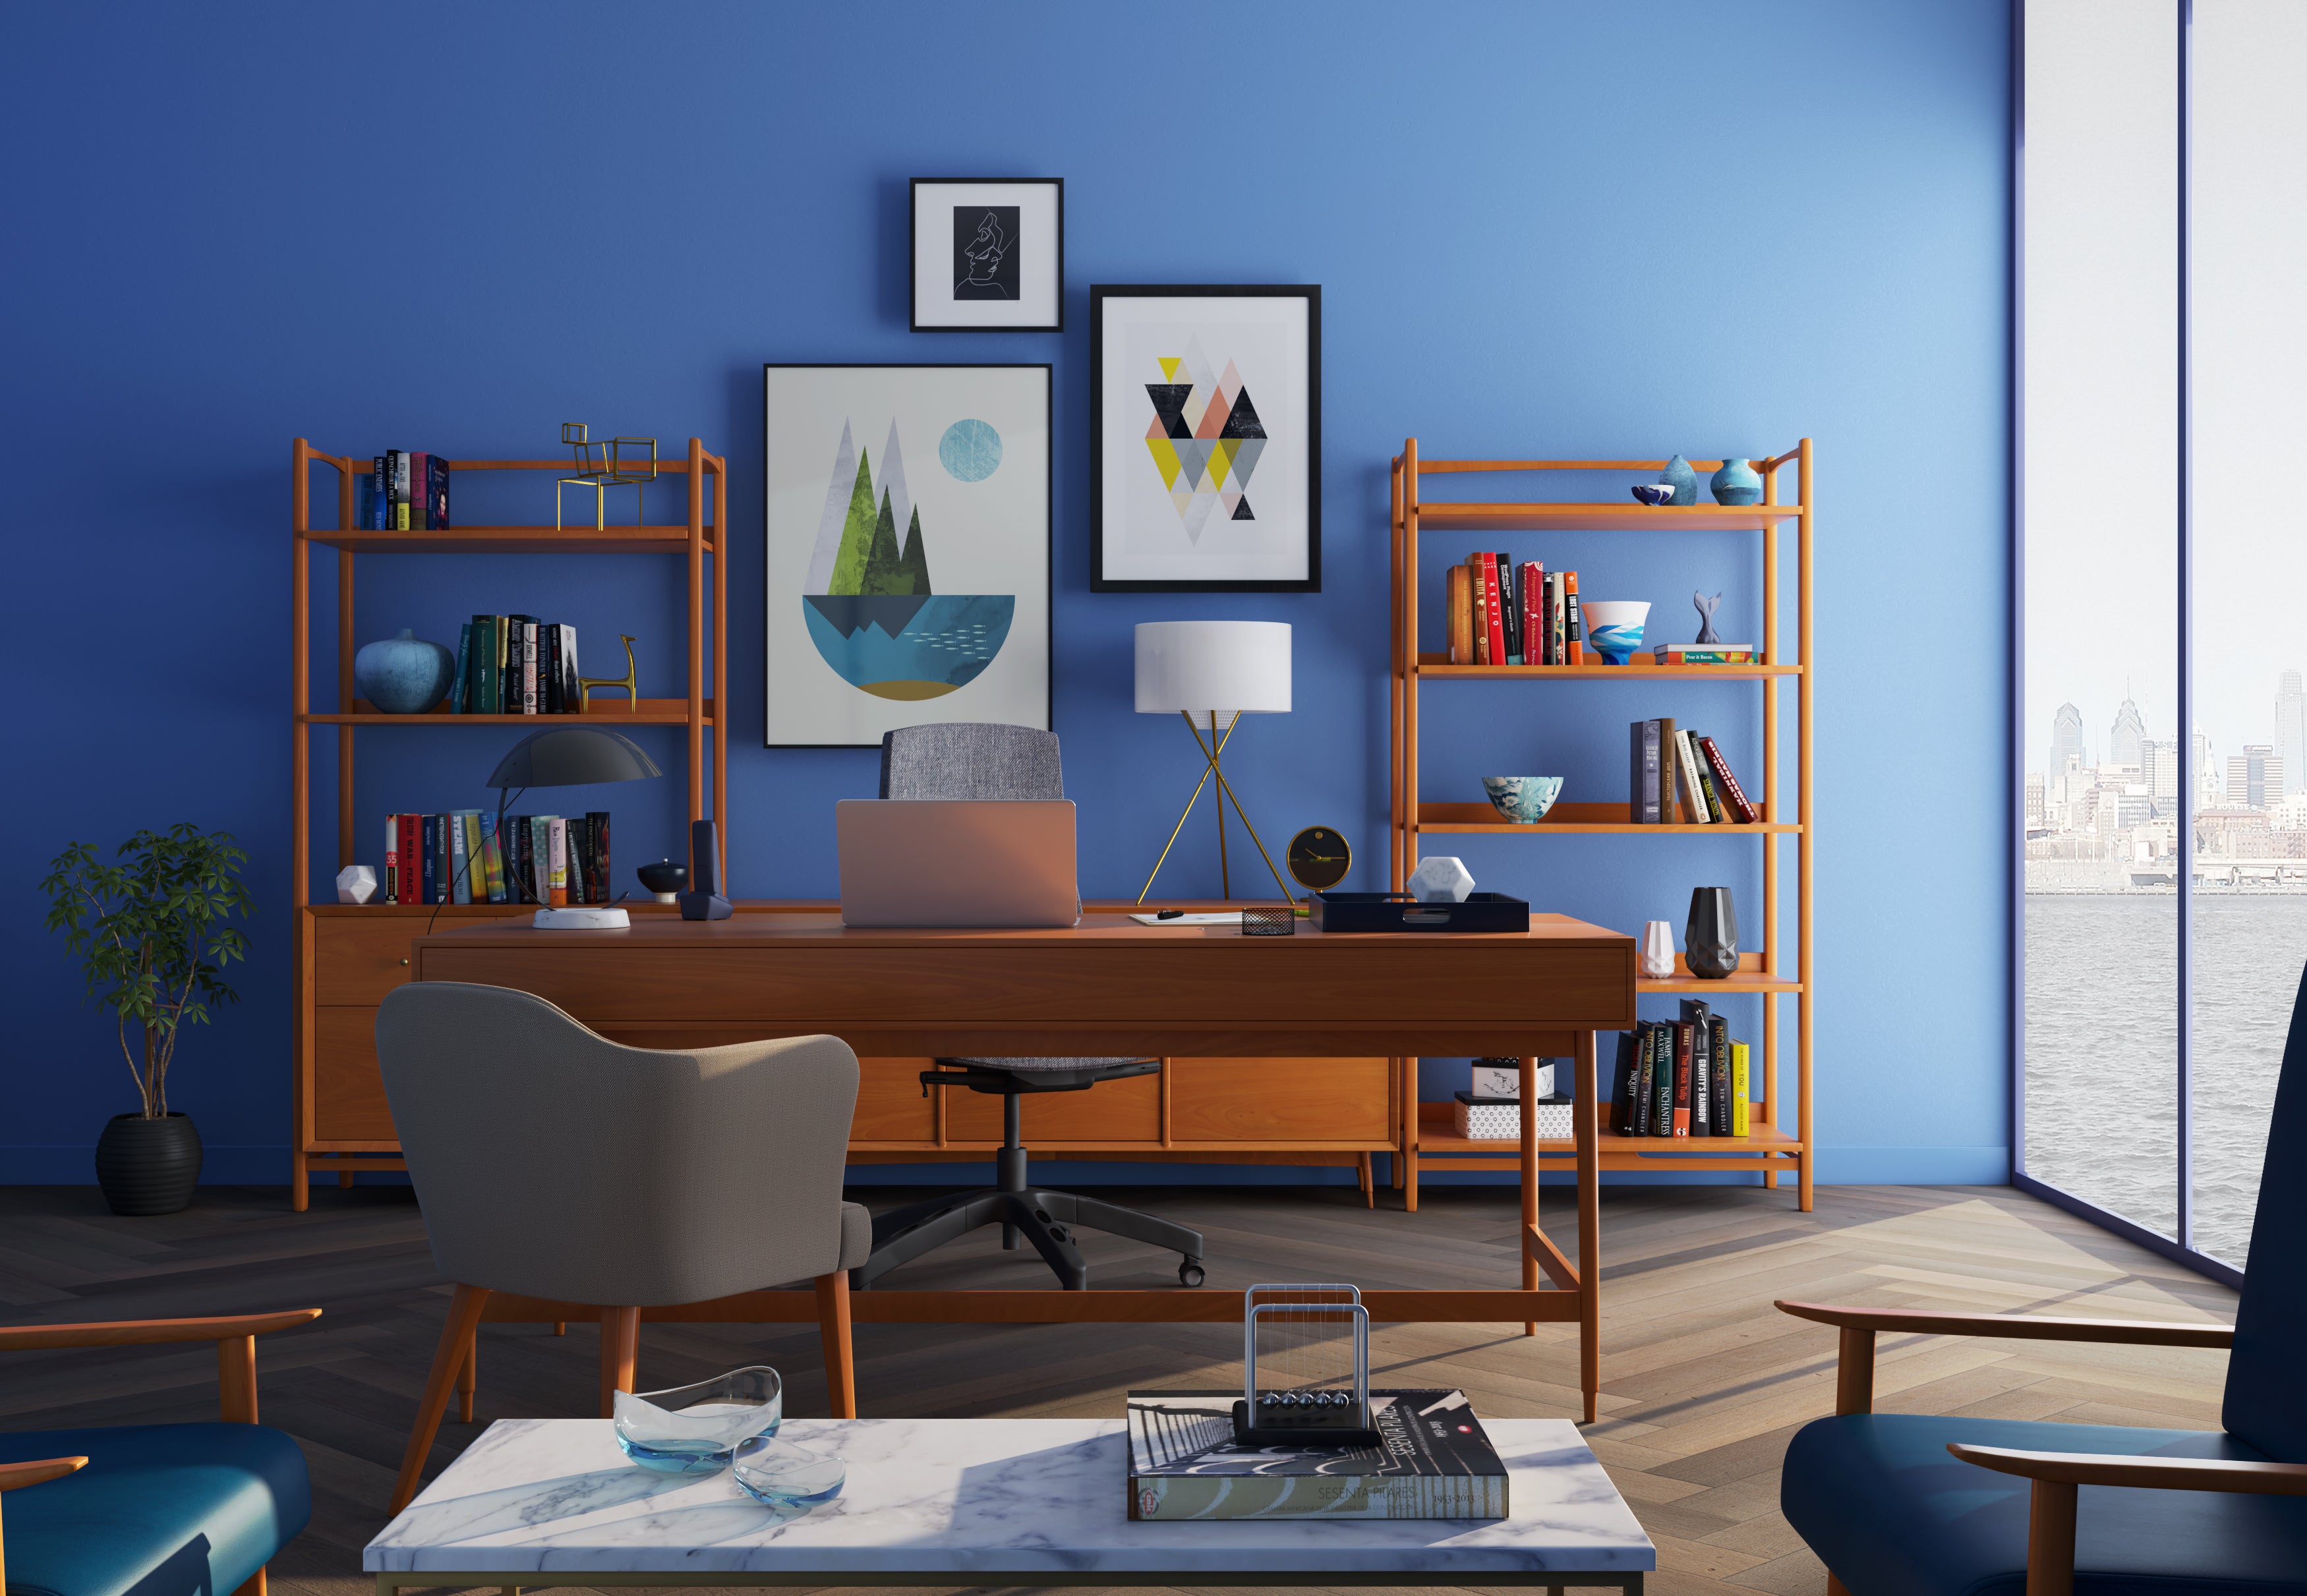 Das Foto zeigt ein eingerichtetes Home-Office mit einer dunkelblauen Wand.